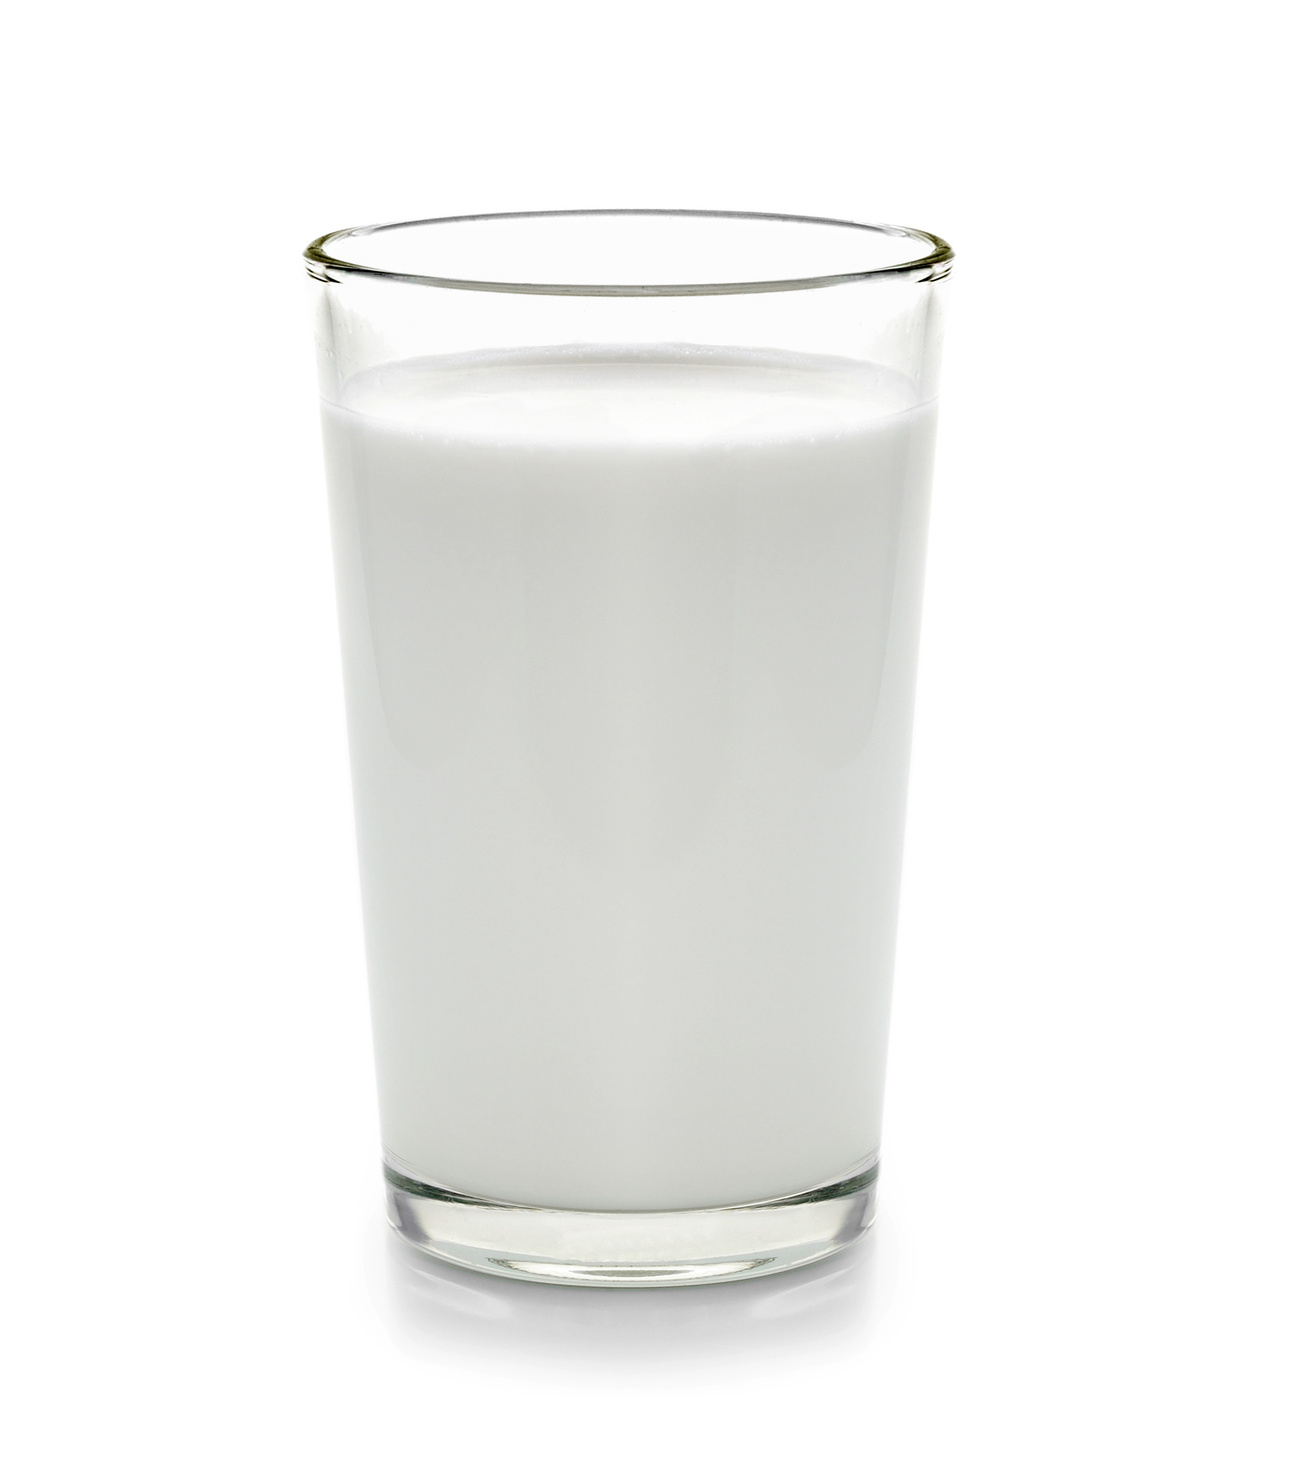 Vergiftungsgefahr: Hersteller ruft Milch zurück!